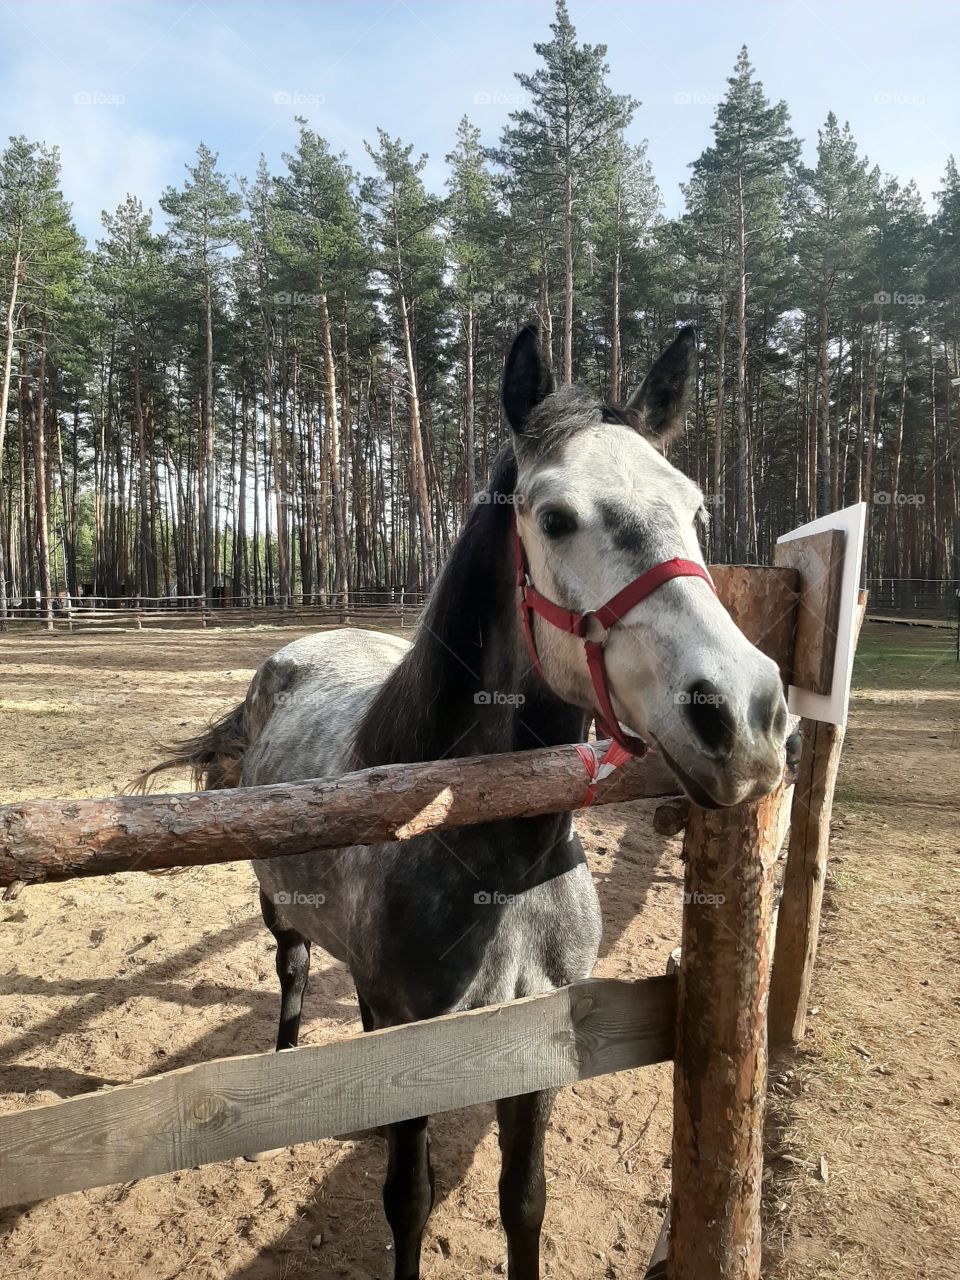 gray horse in nature, серая лошадь с красной уздечкой, лошадь в яблоках